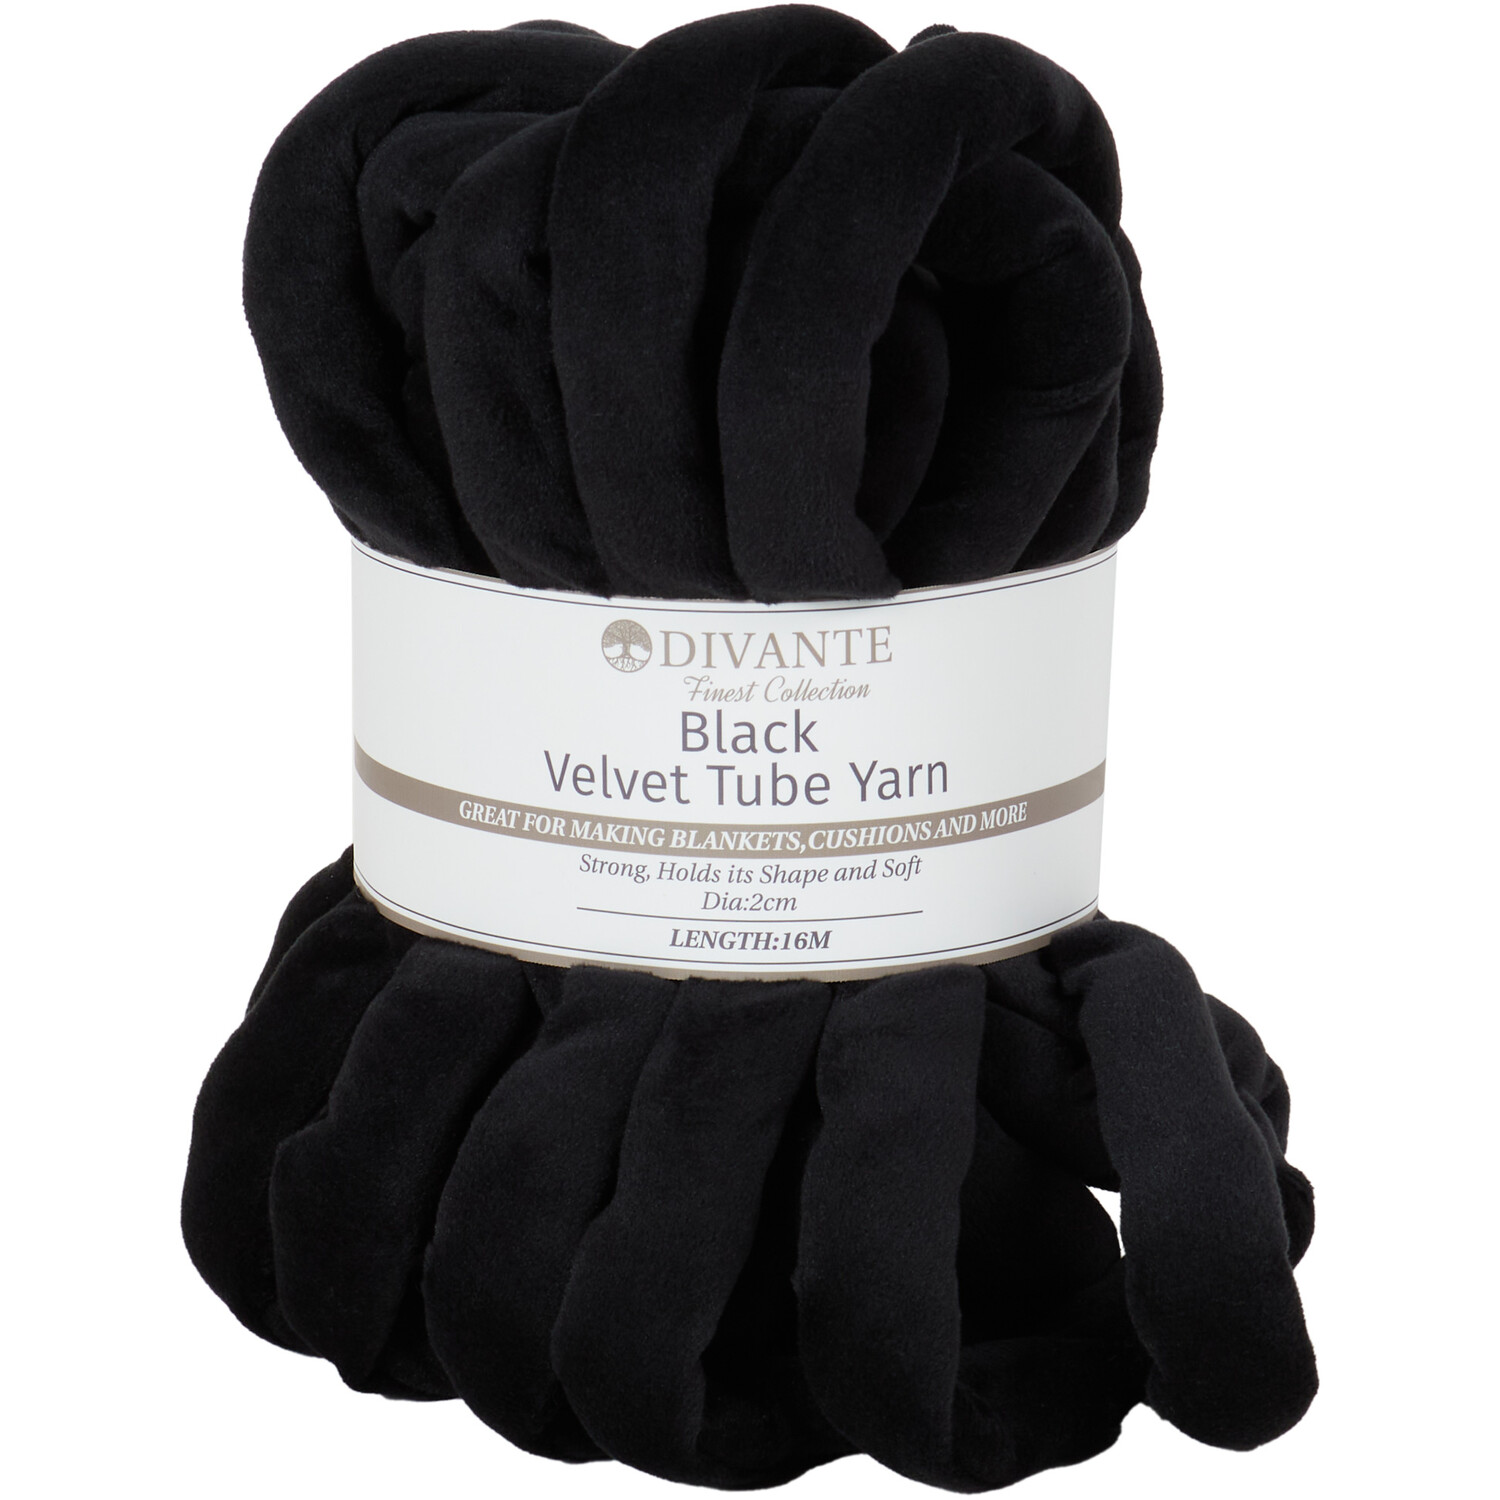 Divante Velvet Tube Yarn - Black Image 1